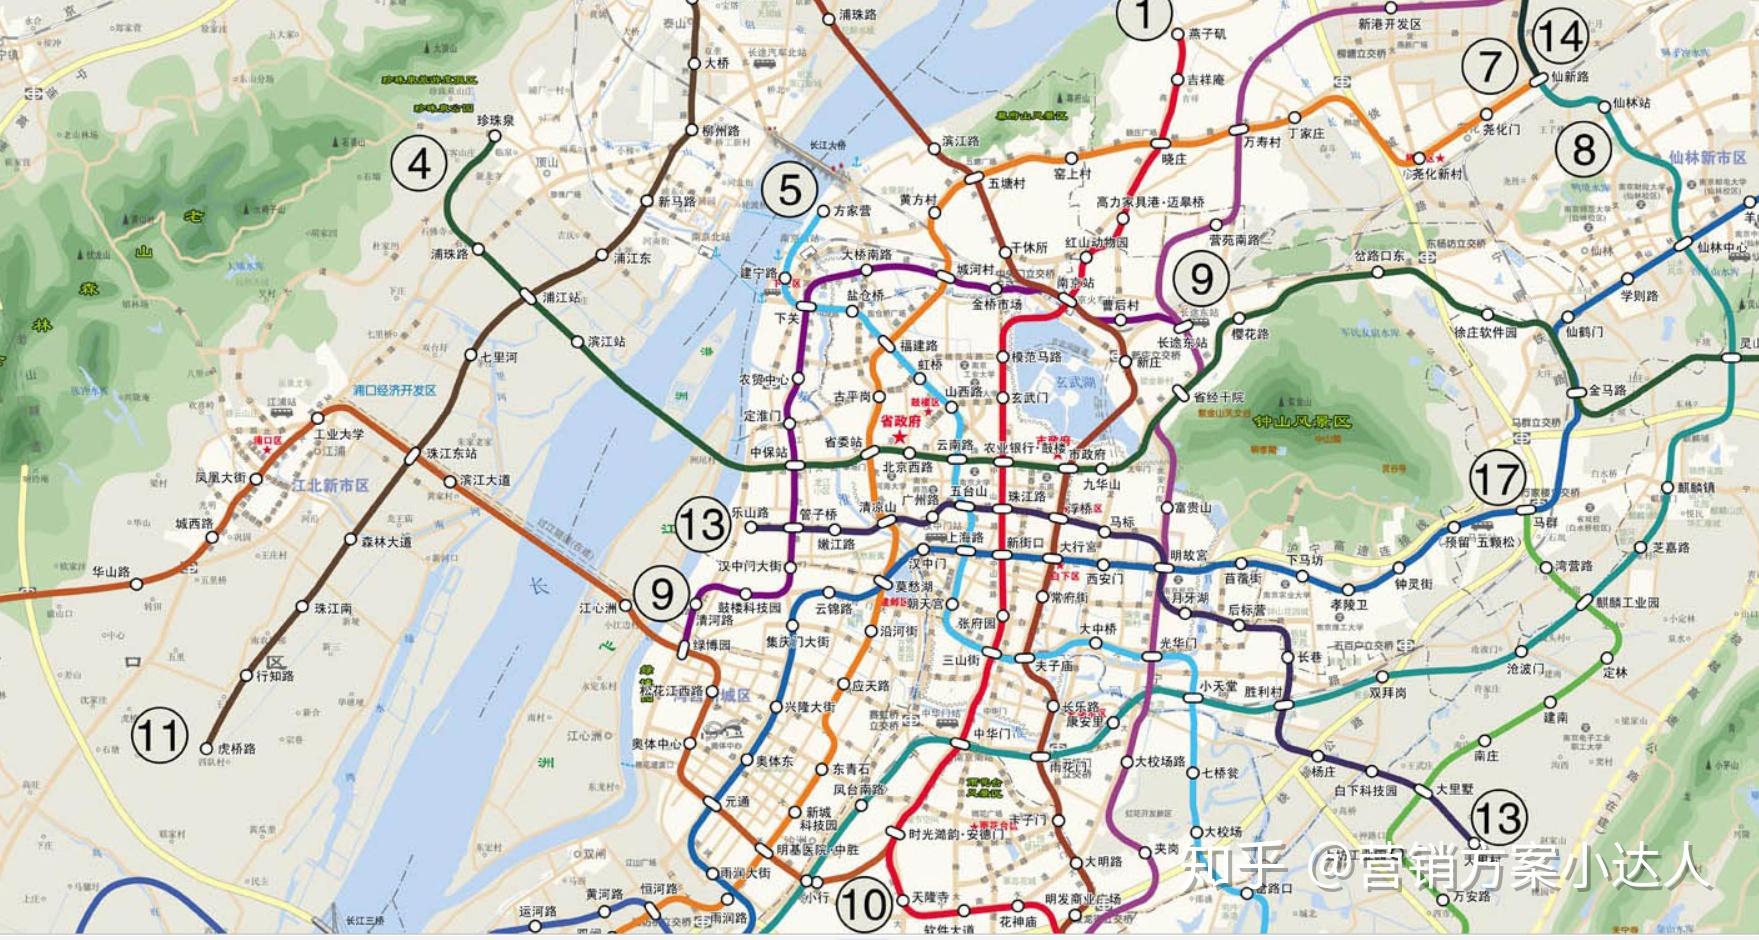 南京轨道交通规划2030线路图【实际情况可能略有出入,仅供参考】:本期